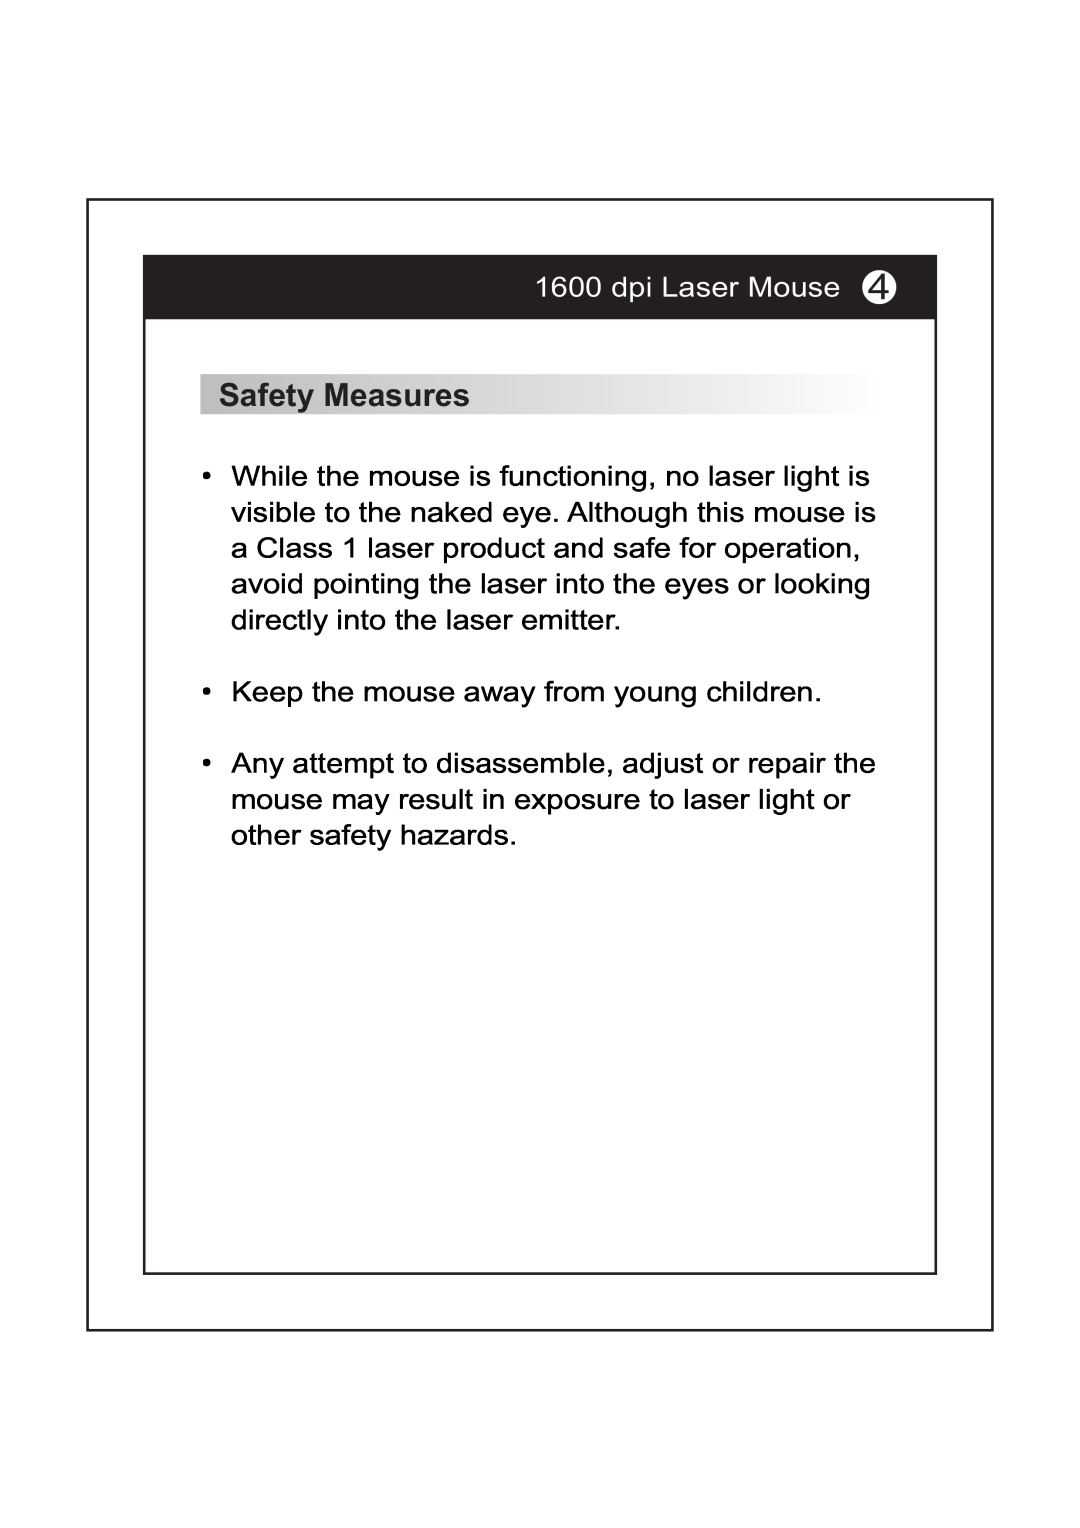 I-Rocks IR-7521L manual Safety Measures, dpi Laser Mouse 